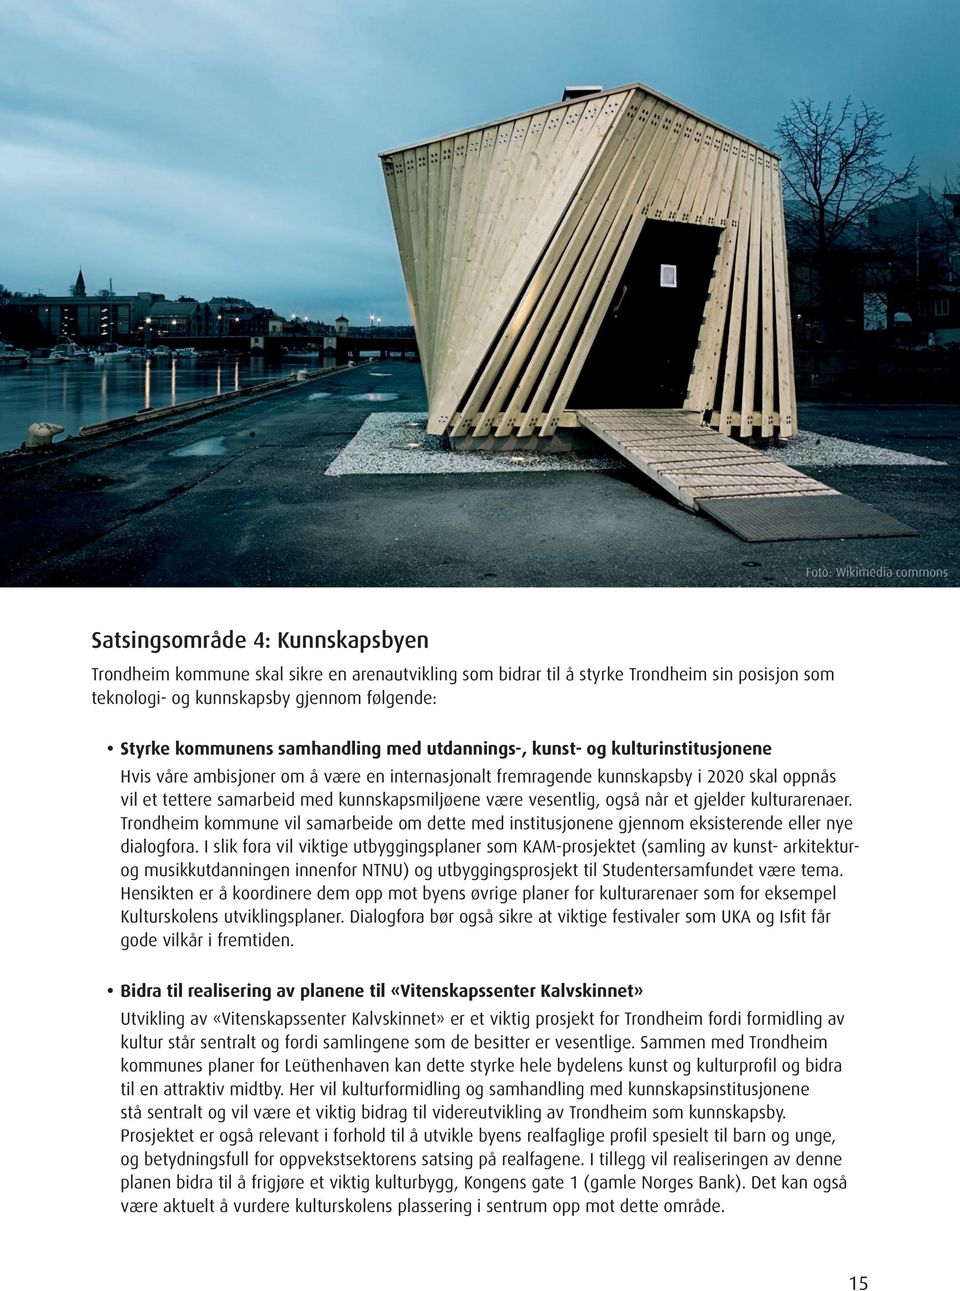 kunnskapsmiljøene være vesentlig, også når et gjelder kulturarenaer. Trondheim kommune vil samarbeide om dette med institusjonene gjennom eksisterende eller nye dialogfora.